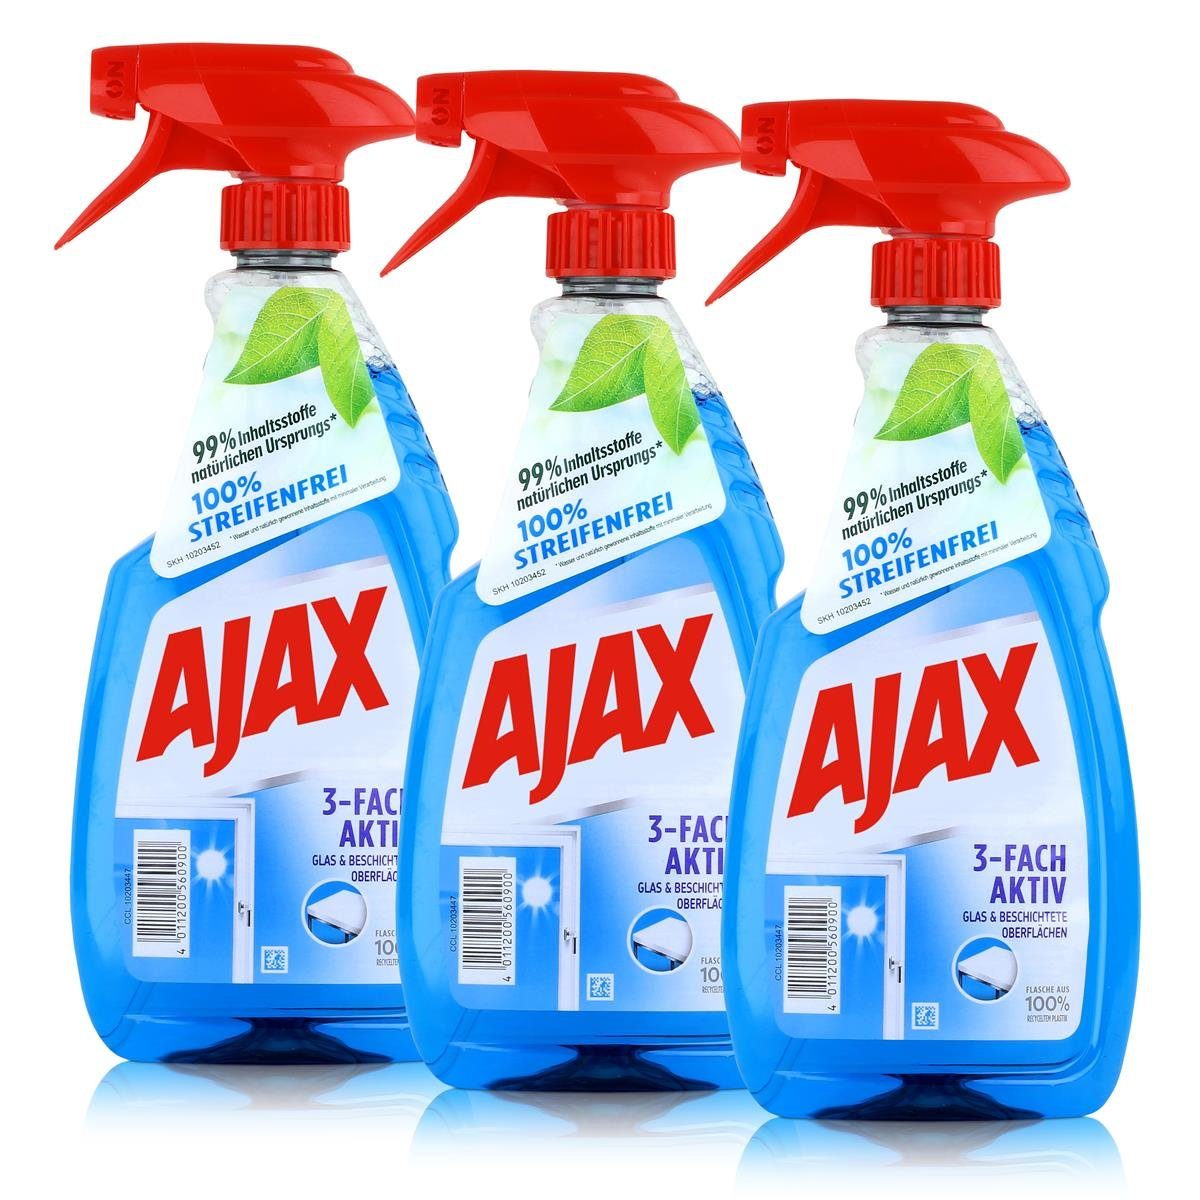 AJAX Ajax Glasreiniger 500ml - Für Glas & Beschichtete Oberflächen (3er Pac Glasreiniger